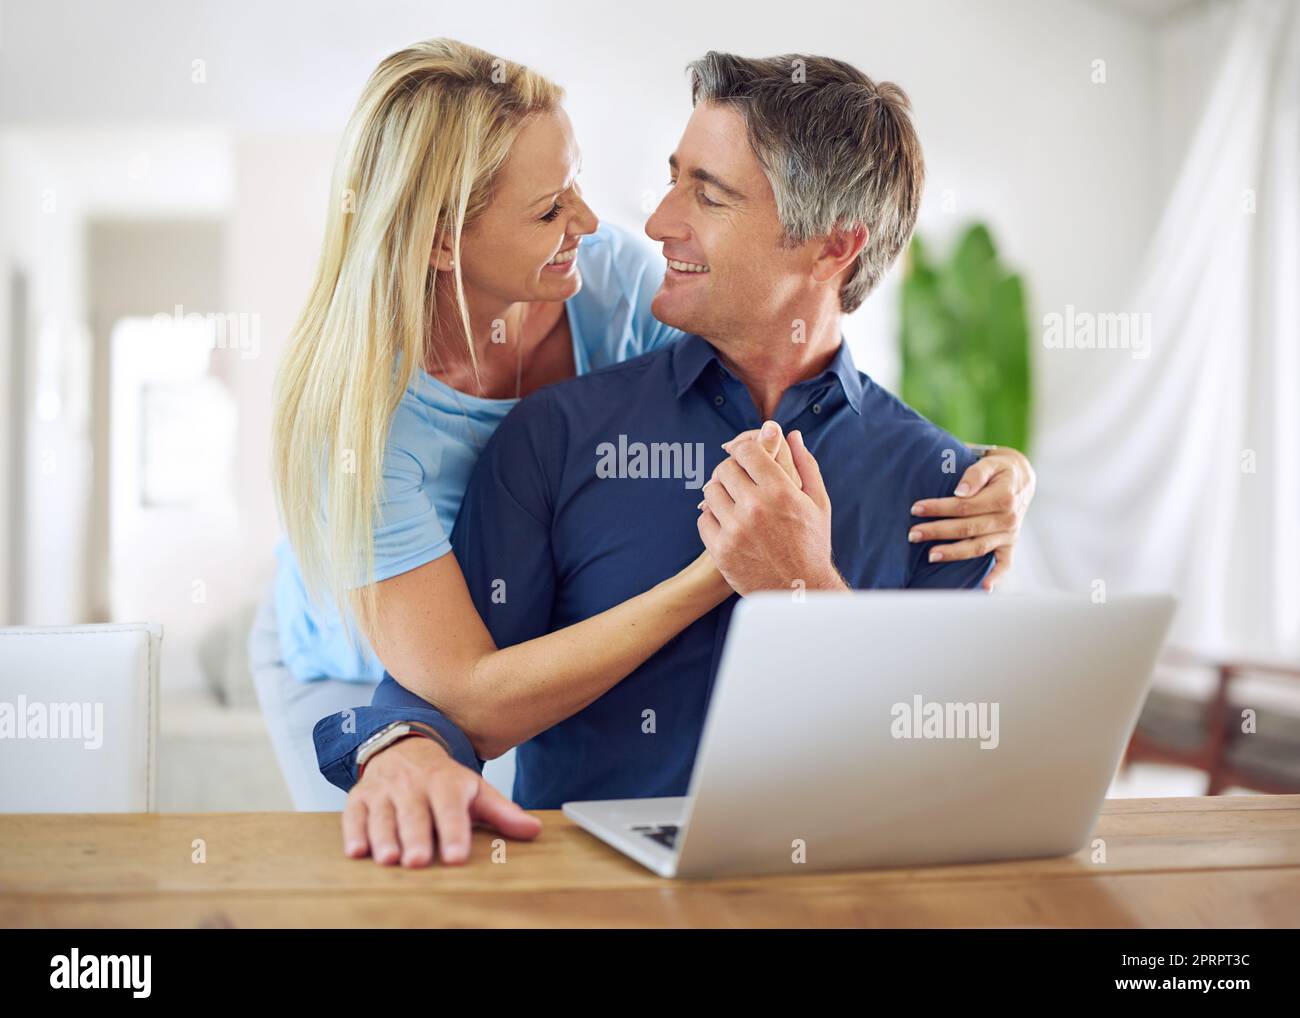 Unser Urlaub ist ausgebucht, ein glückliches reifes Paar, das zu Hause einen Laptop benutzt. Stockfoto